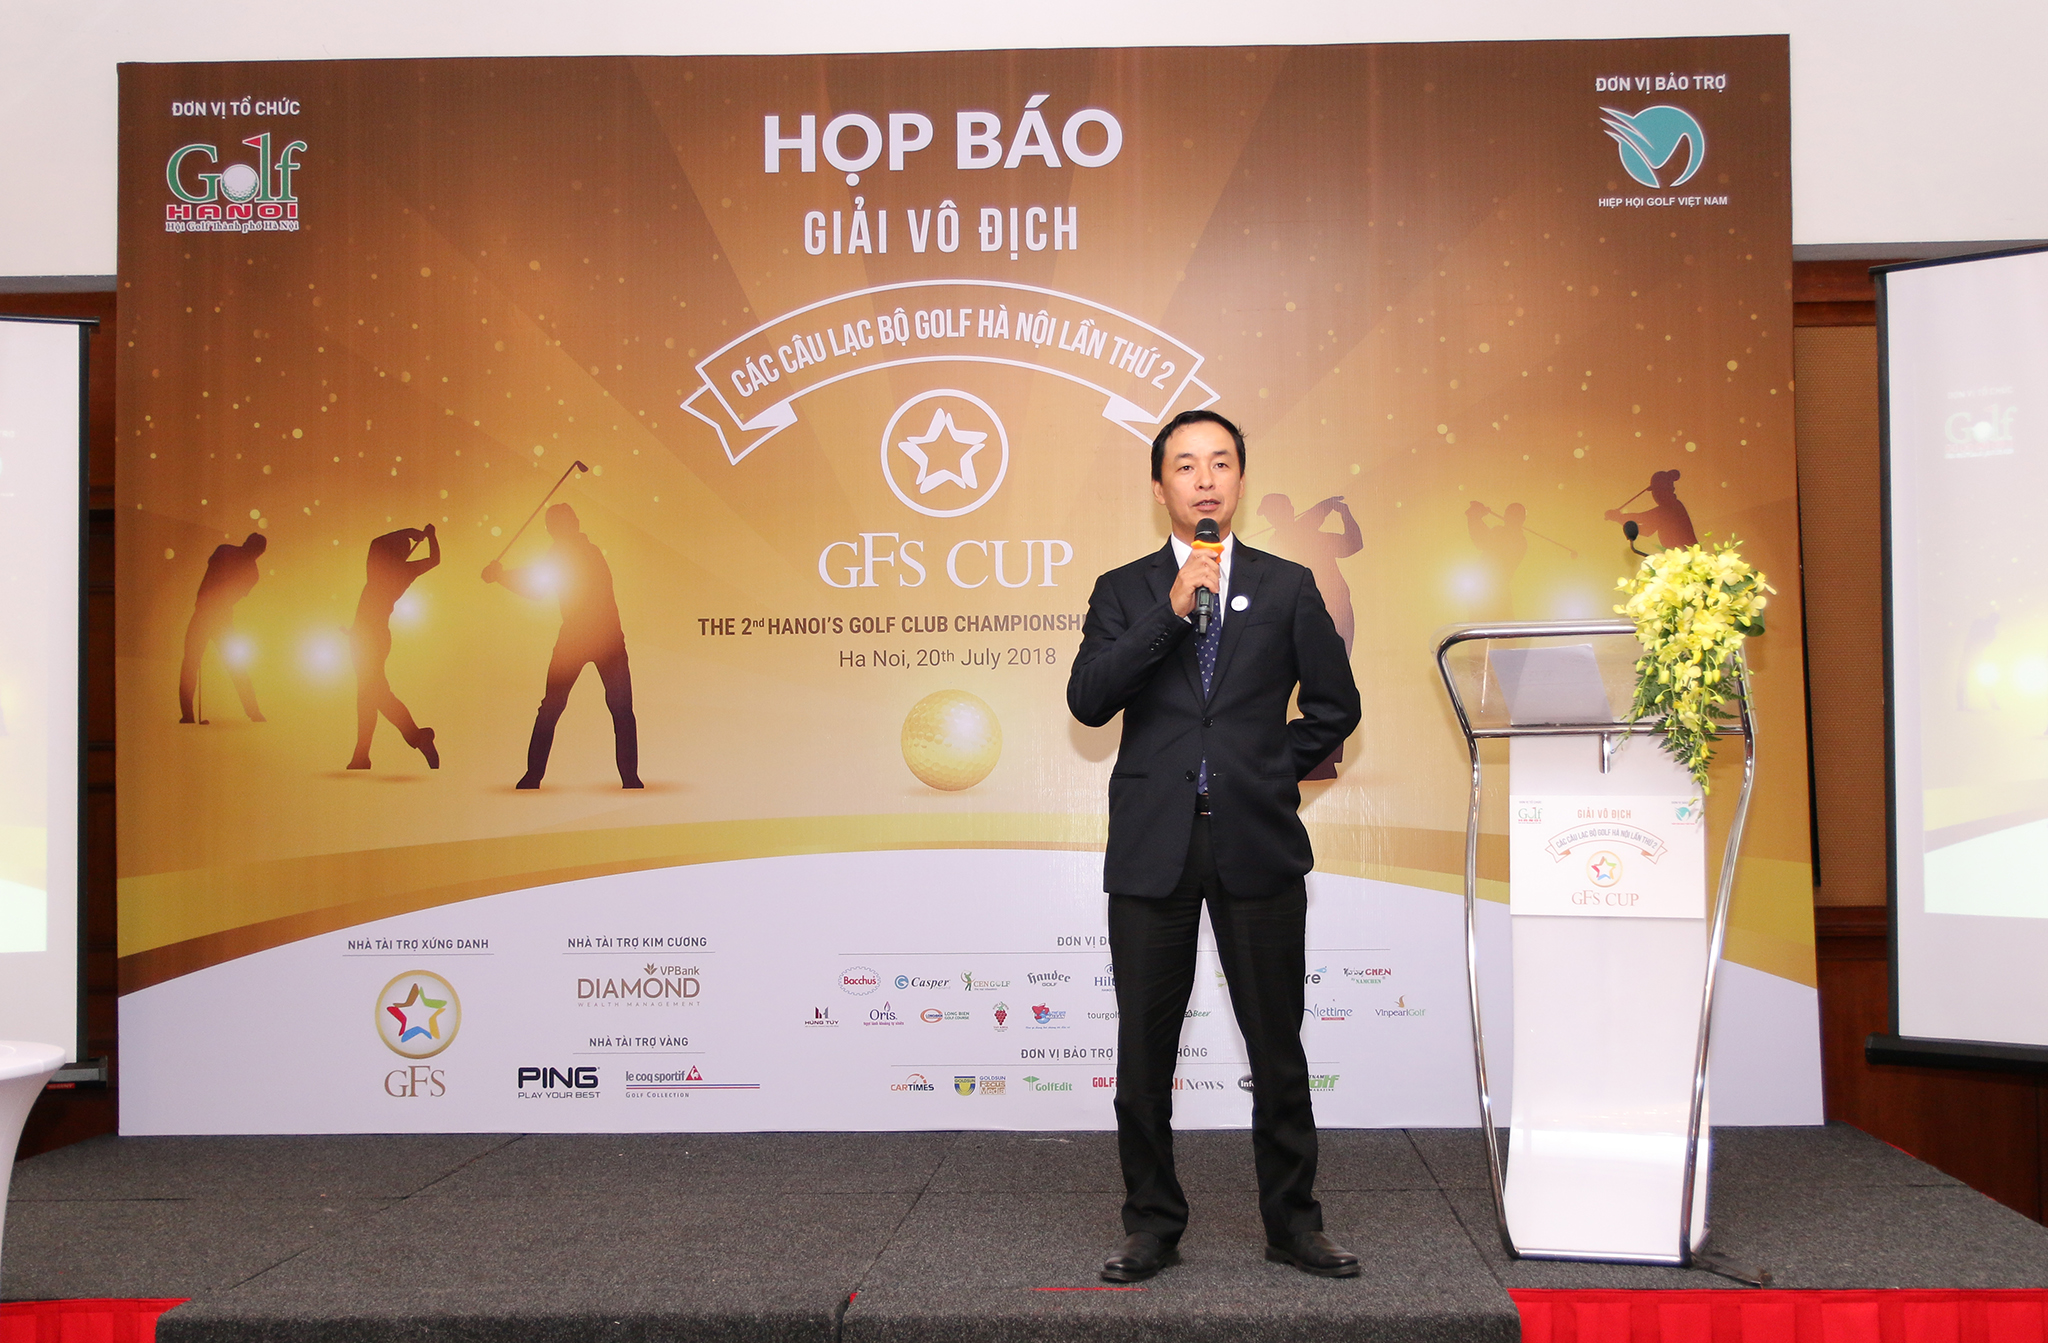 Giải Vô địch các CLB Golf Hà Nội: Ngày hội lớn của golf Thủ đô và cơ hội quảng bá thương hiệu